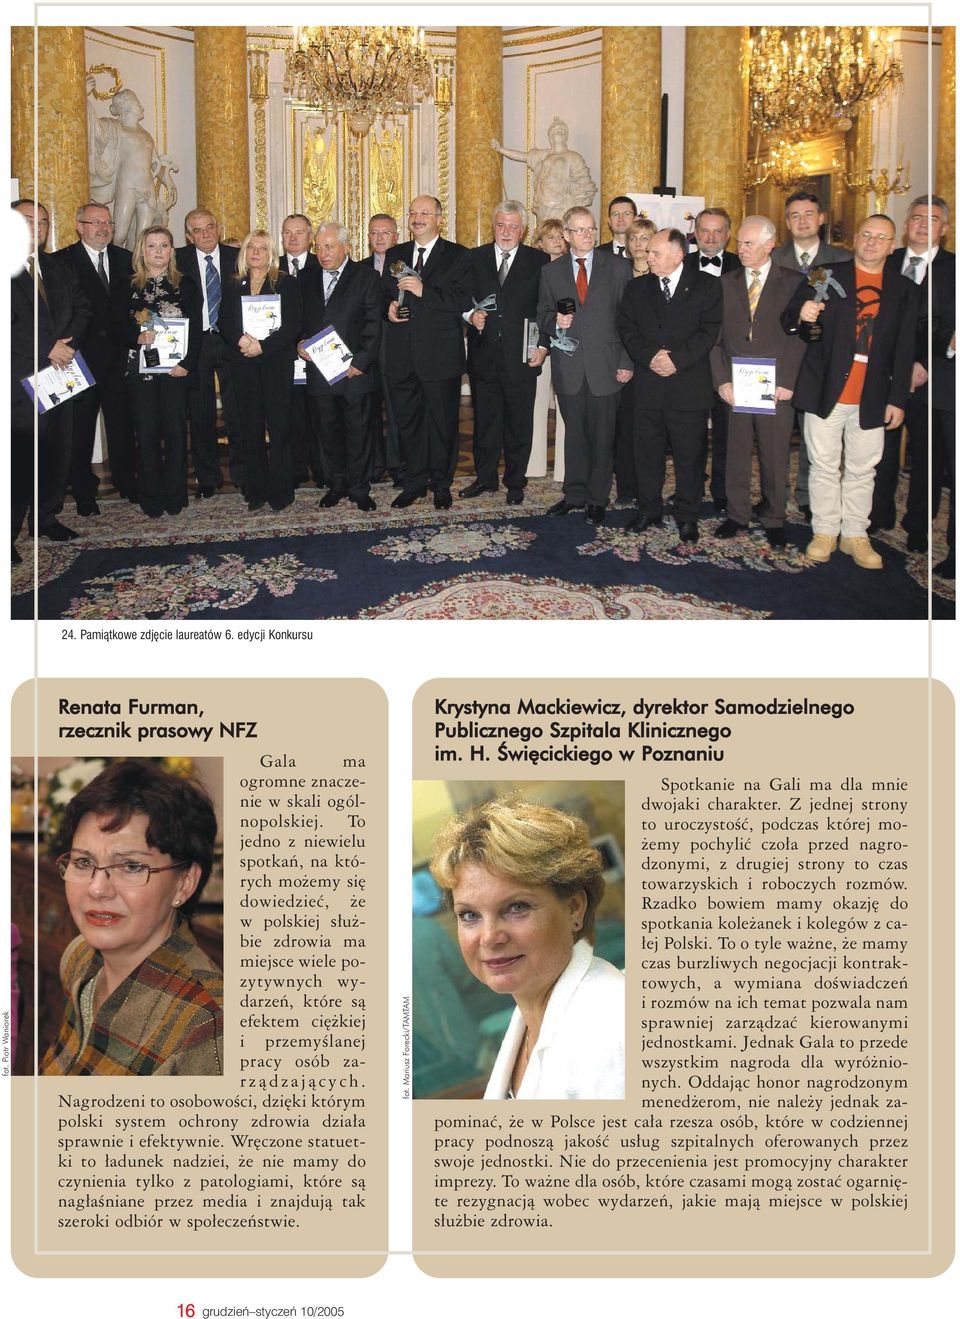 Nagrodzeni to osobowości, dzięki którym polski system ochrony zdrowia działa sprawnie i efektywnie.